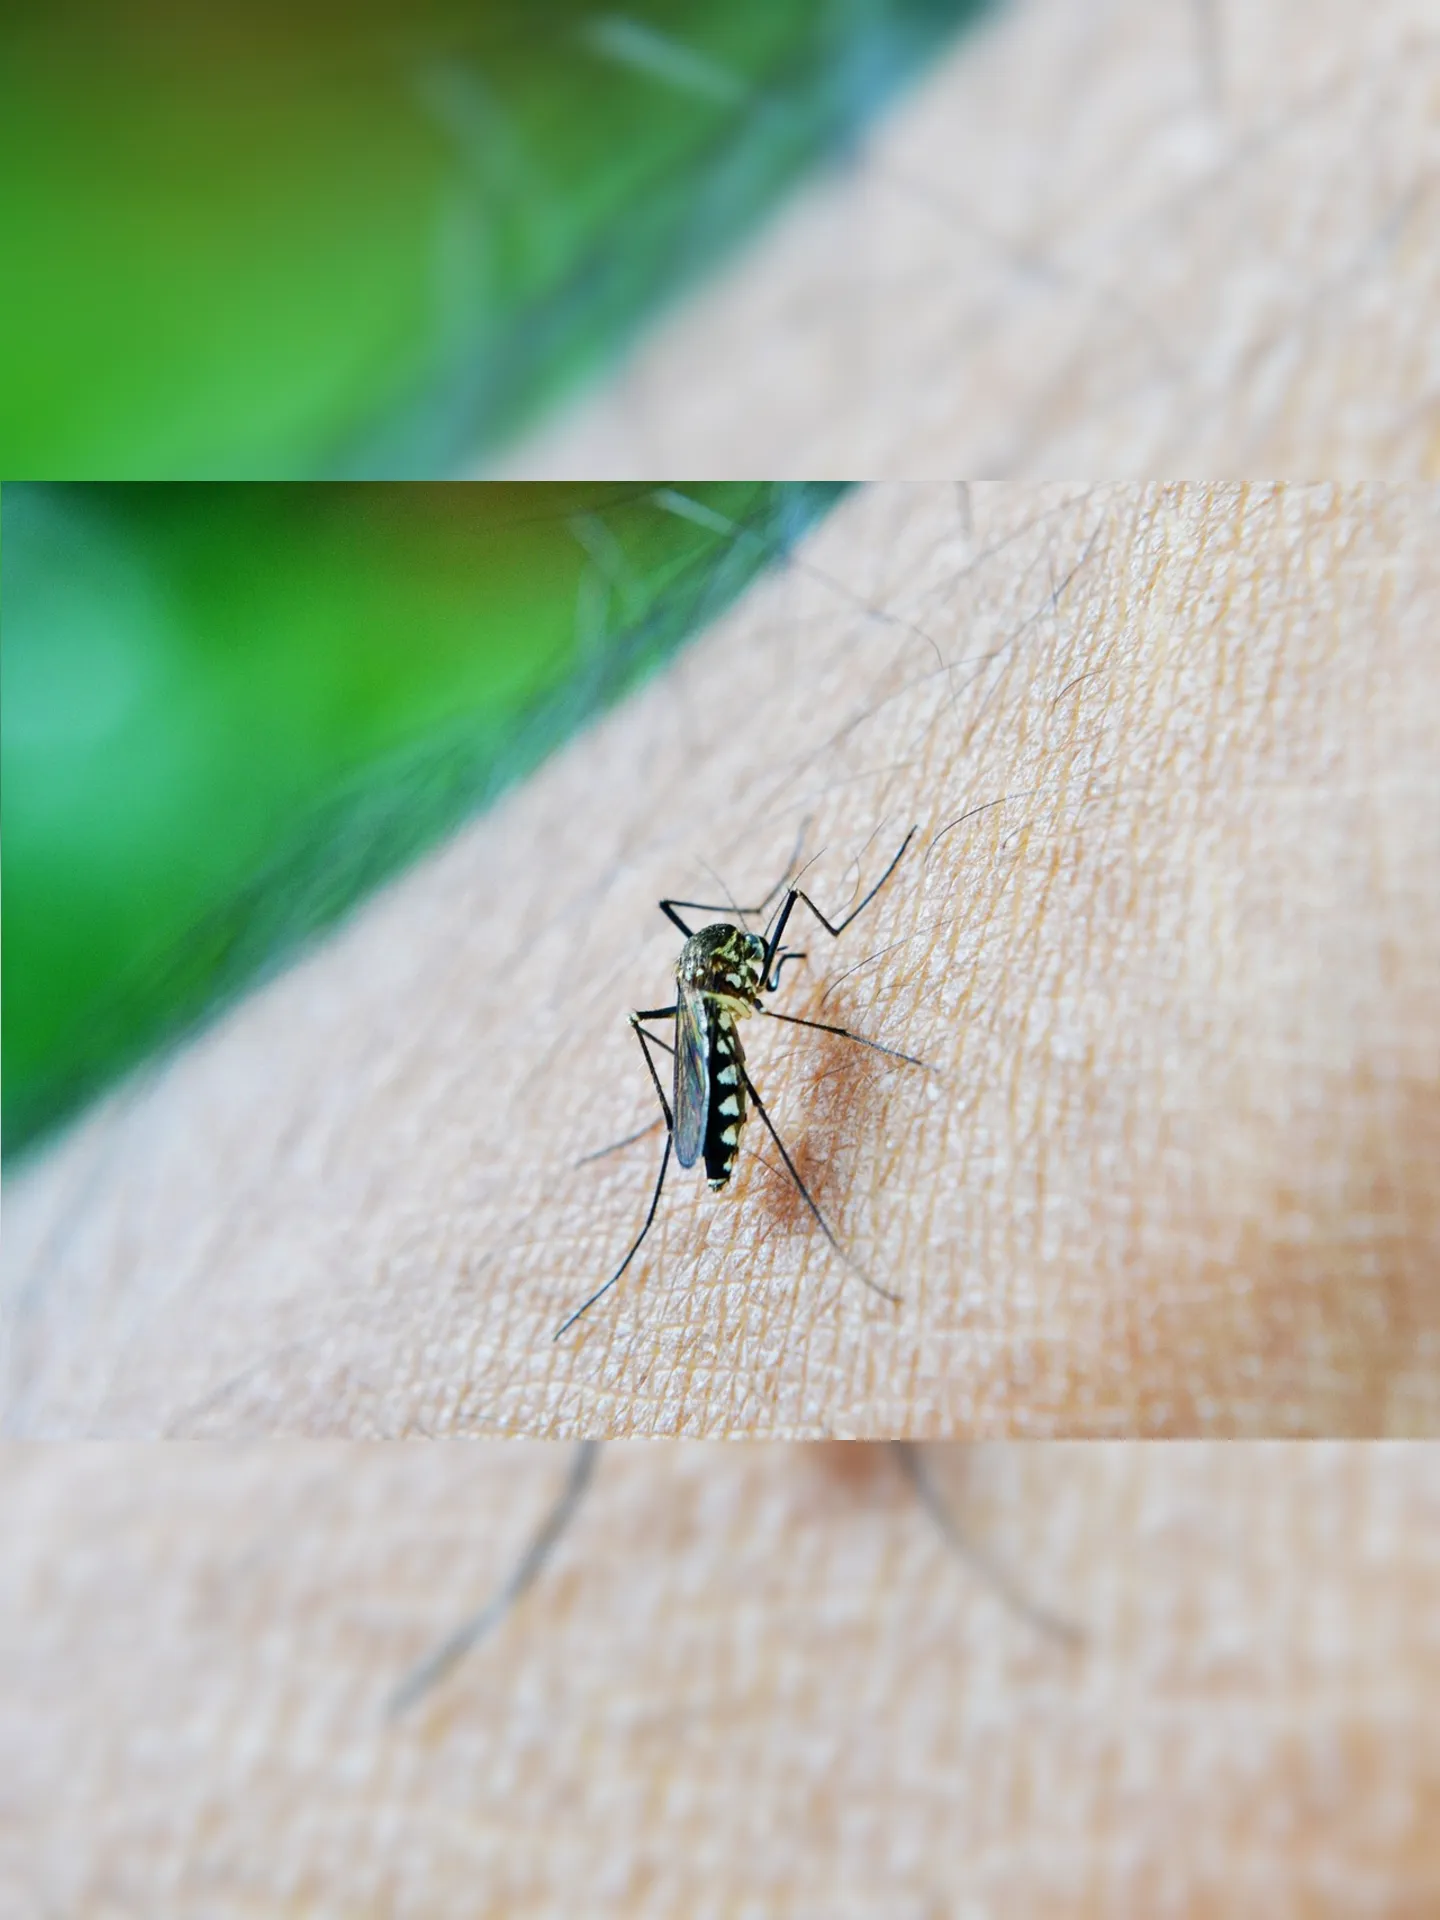 Na última semana, o primeiro caso de dengue do tipo 4 foi registrado após cinco anos